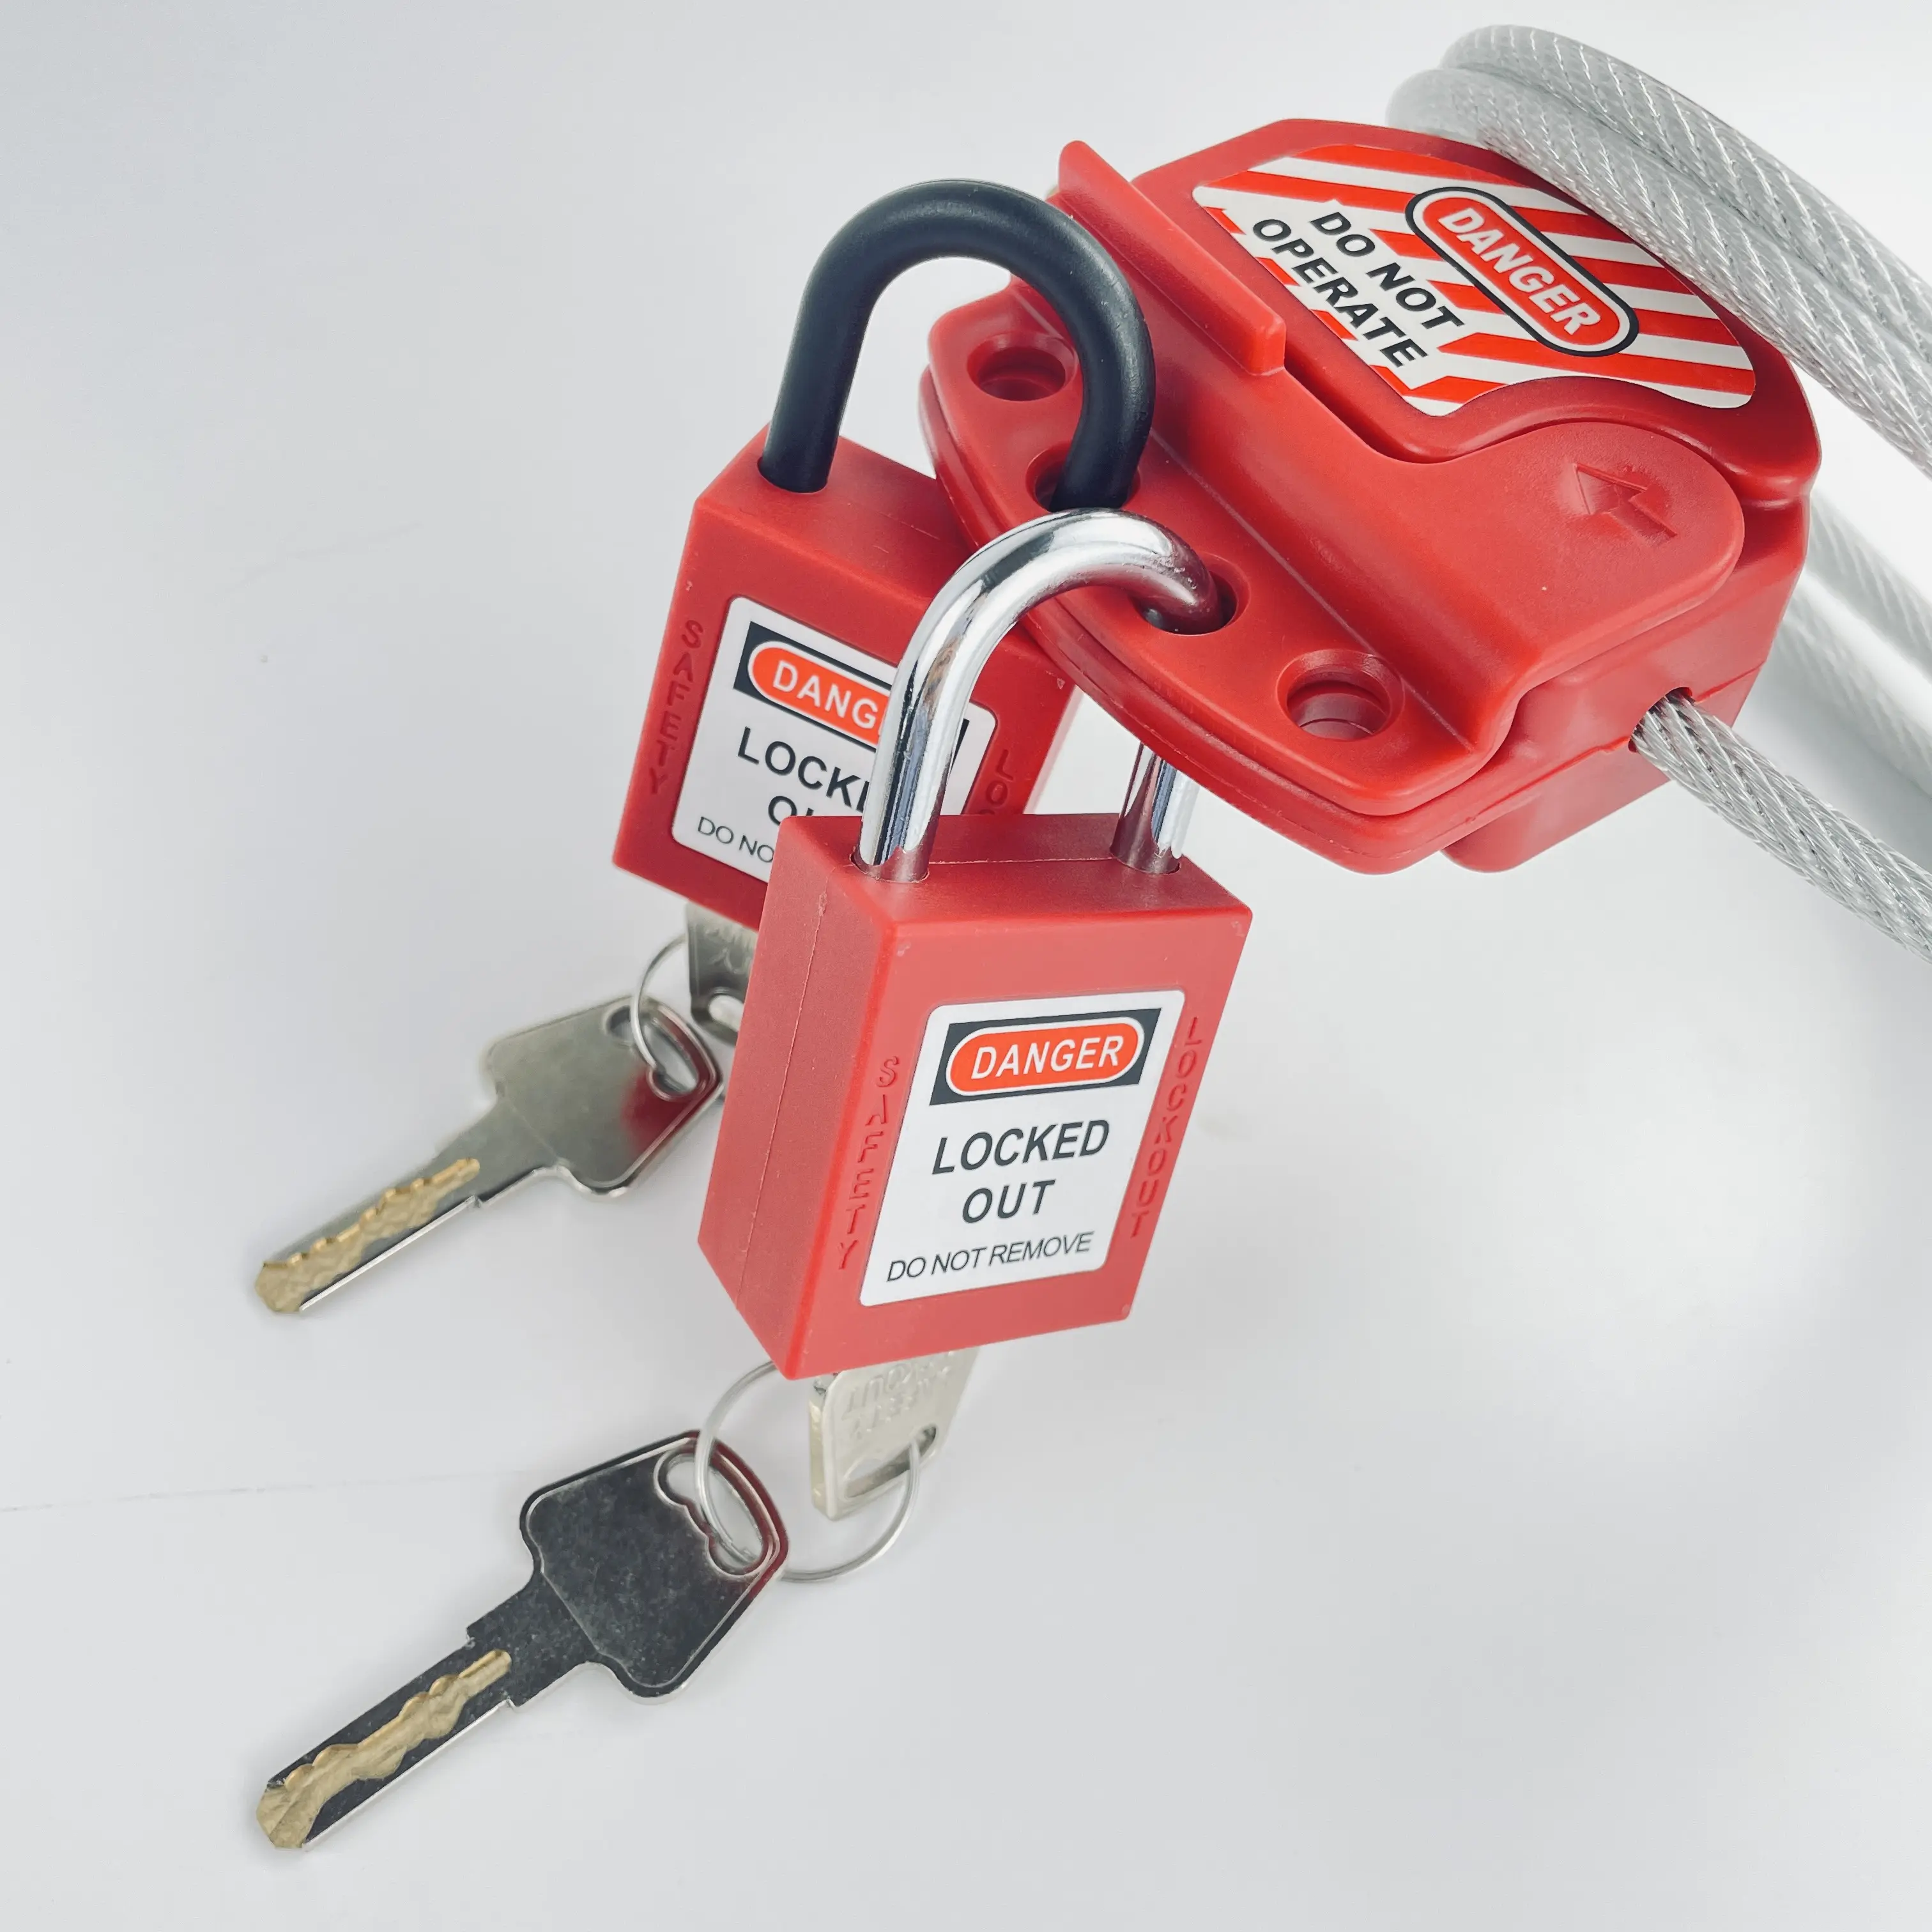 Nhà sản xuất tại Trung Quốc tagout ổ khóa bảo đảm và chìa khóa khóa ra safeti Loto an toàn ổ khóa an toàn công nghiệp ổ khóa thiết bị